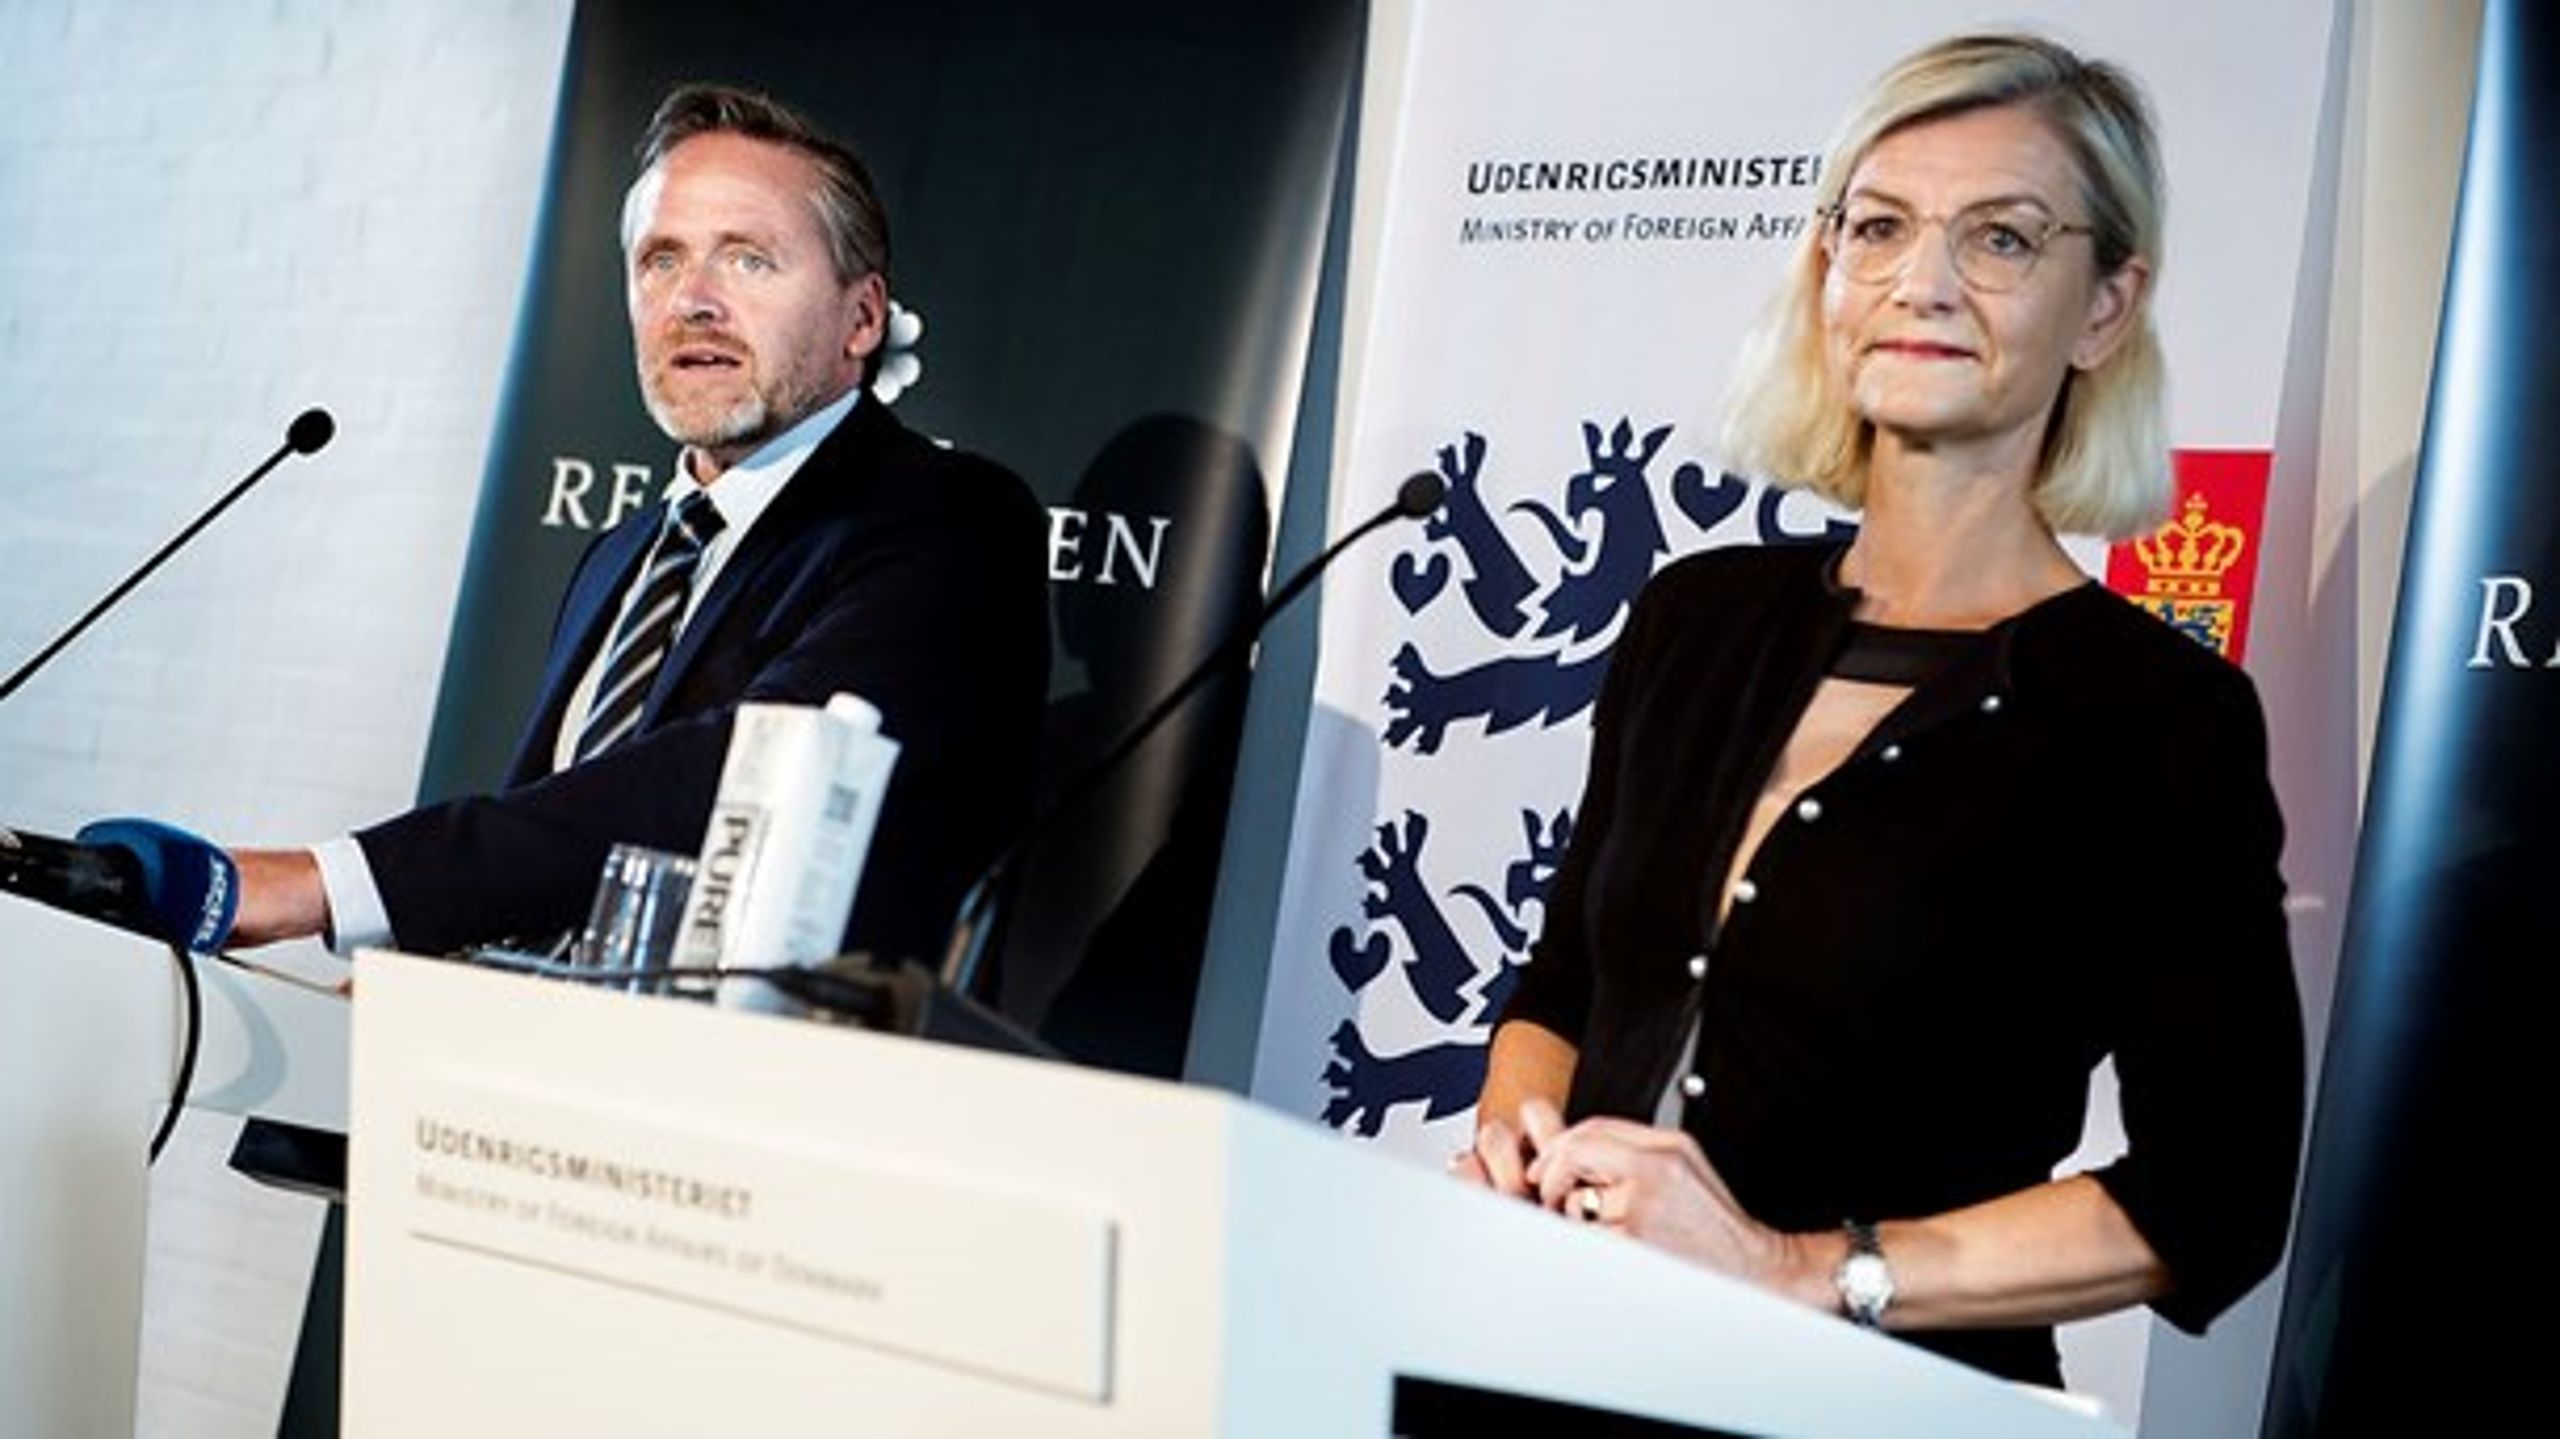 Udenrigsminister Anders Samuelsen (LA) og udviklingsminister Ulla Tørnæs (V) præsenterer den nye strategi ved pressemøde.<div>(Liselotte Sabroe/Scanpix)</div>